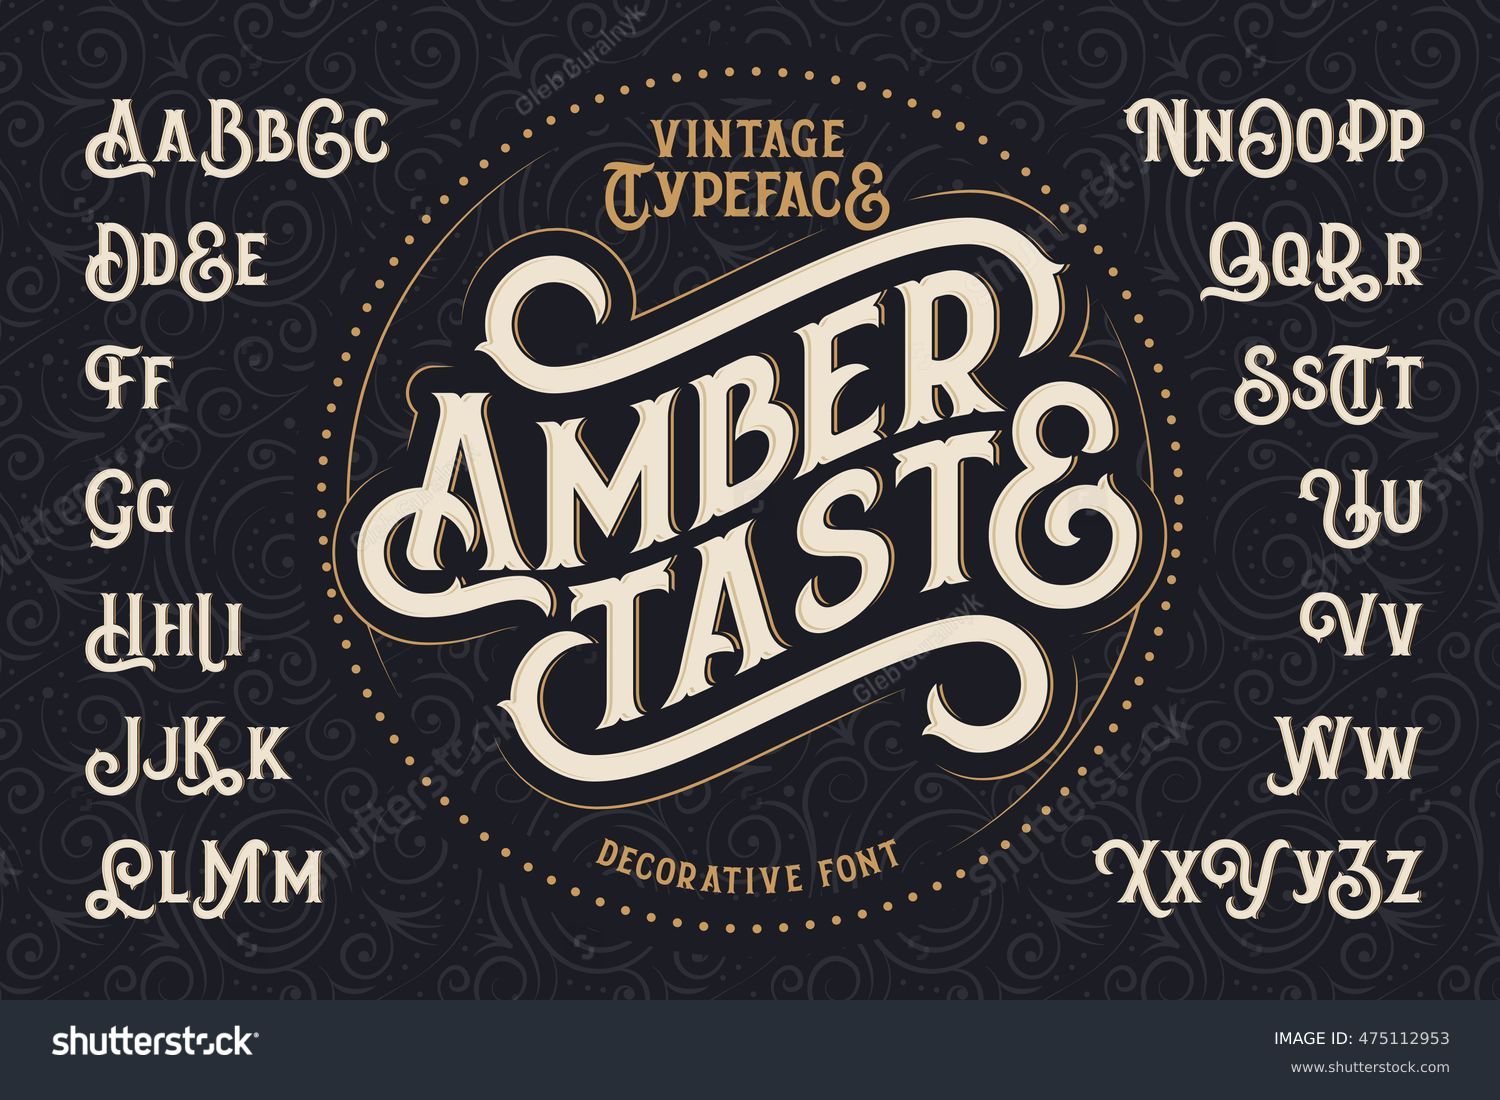 Vintage decorative font named "Amber Taste" with label design and background pattern #475112953